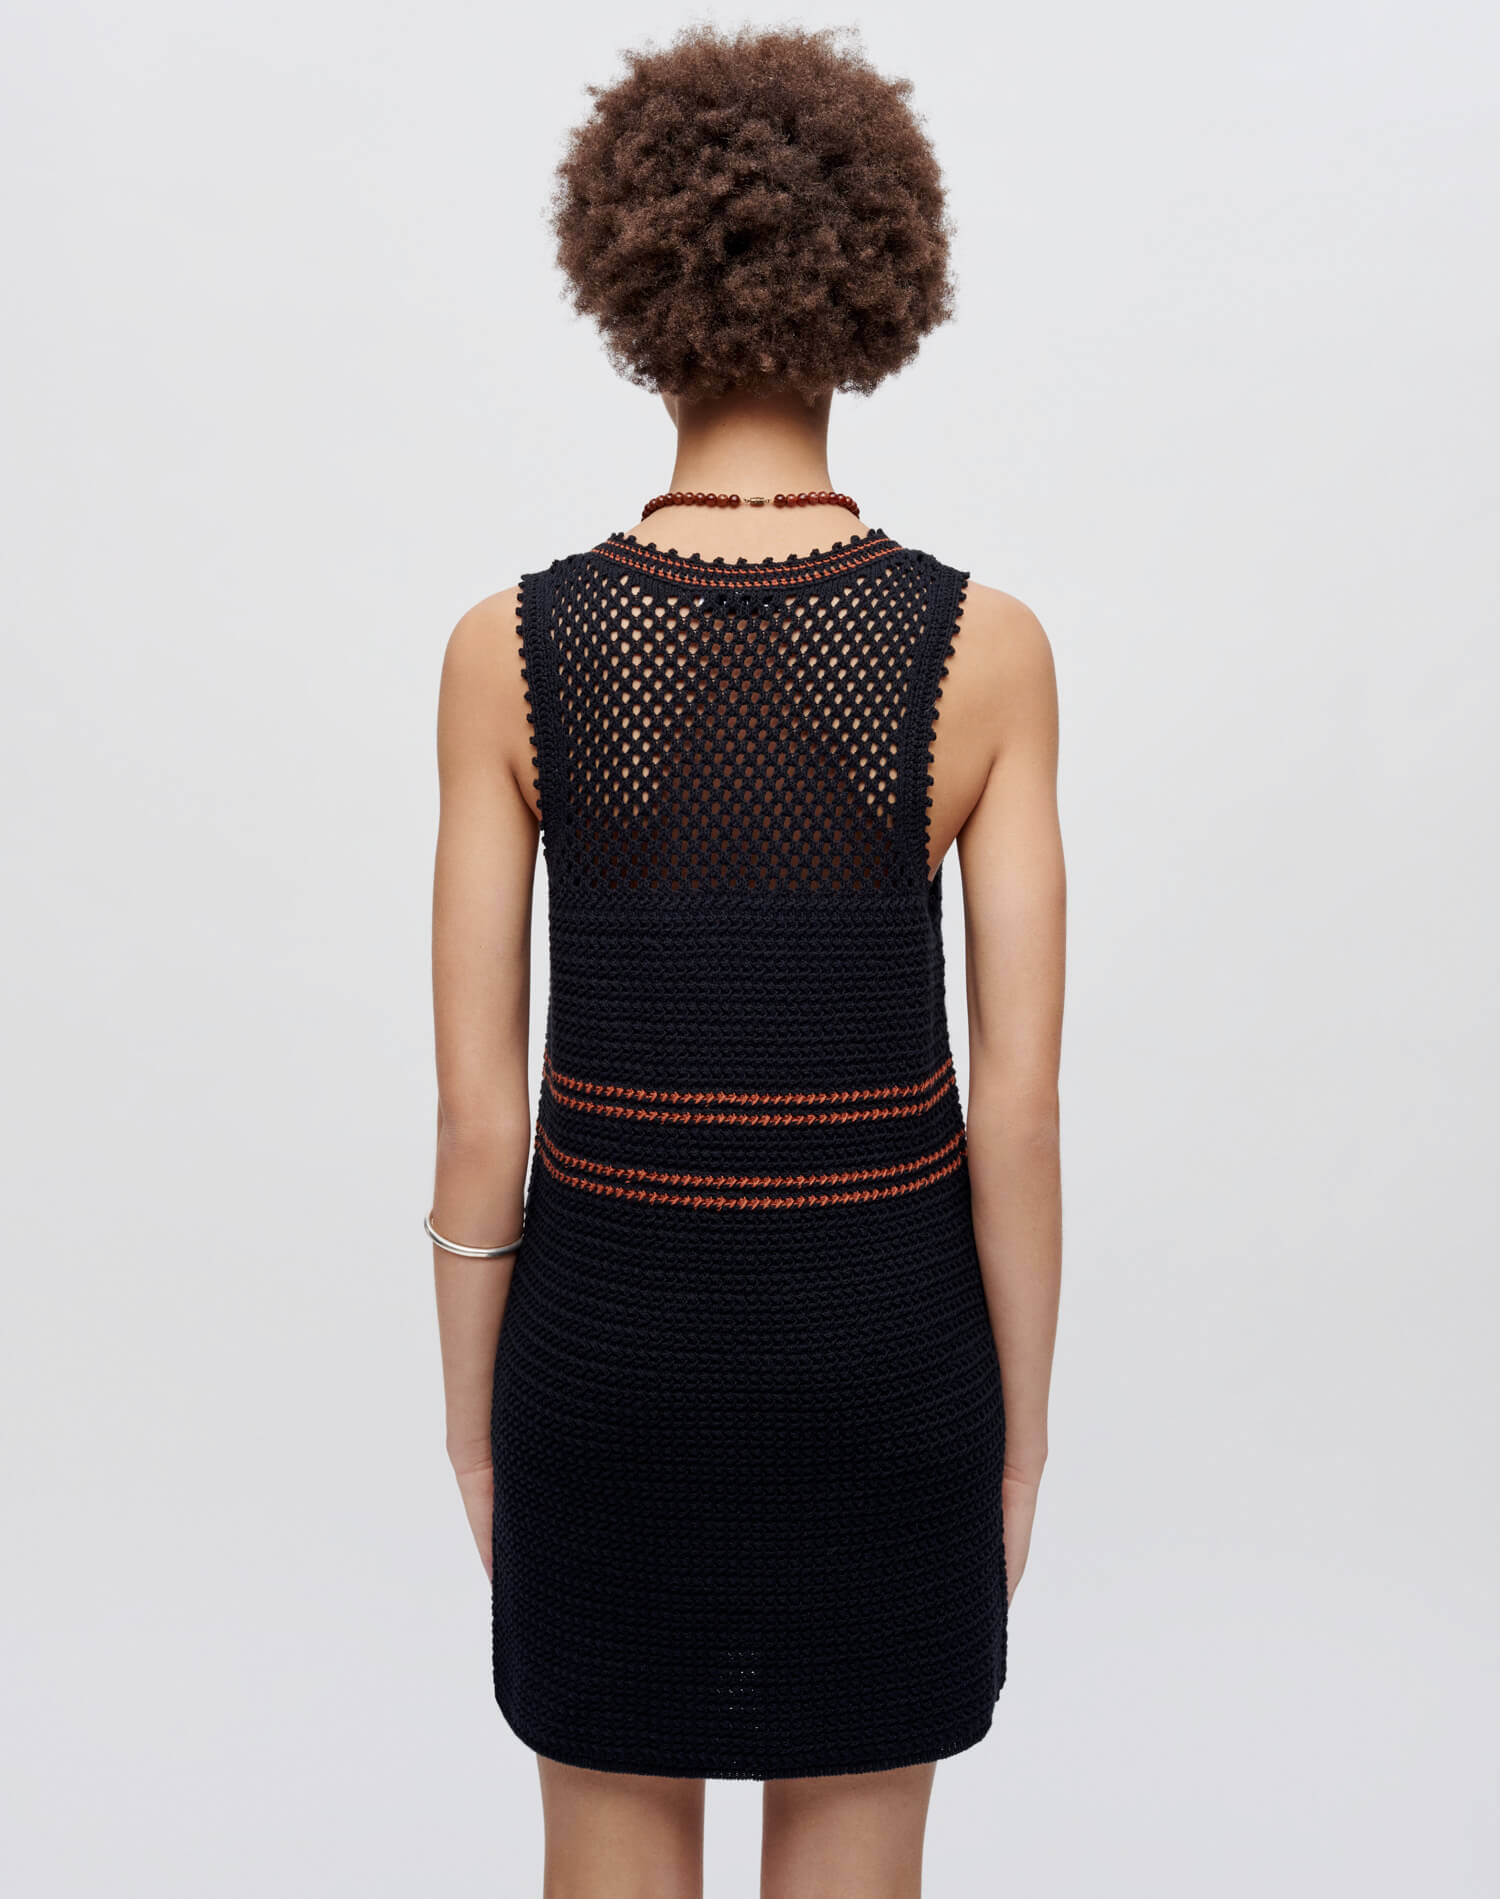 Crochet Mesh Dress - Black Combo